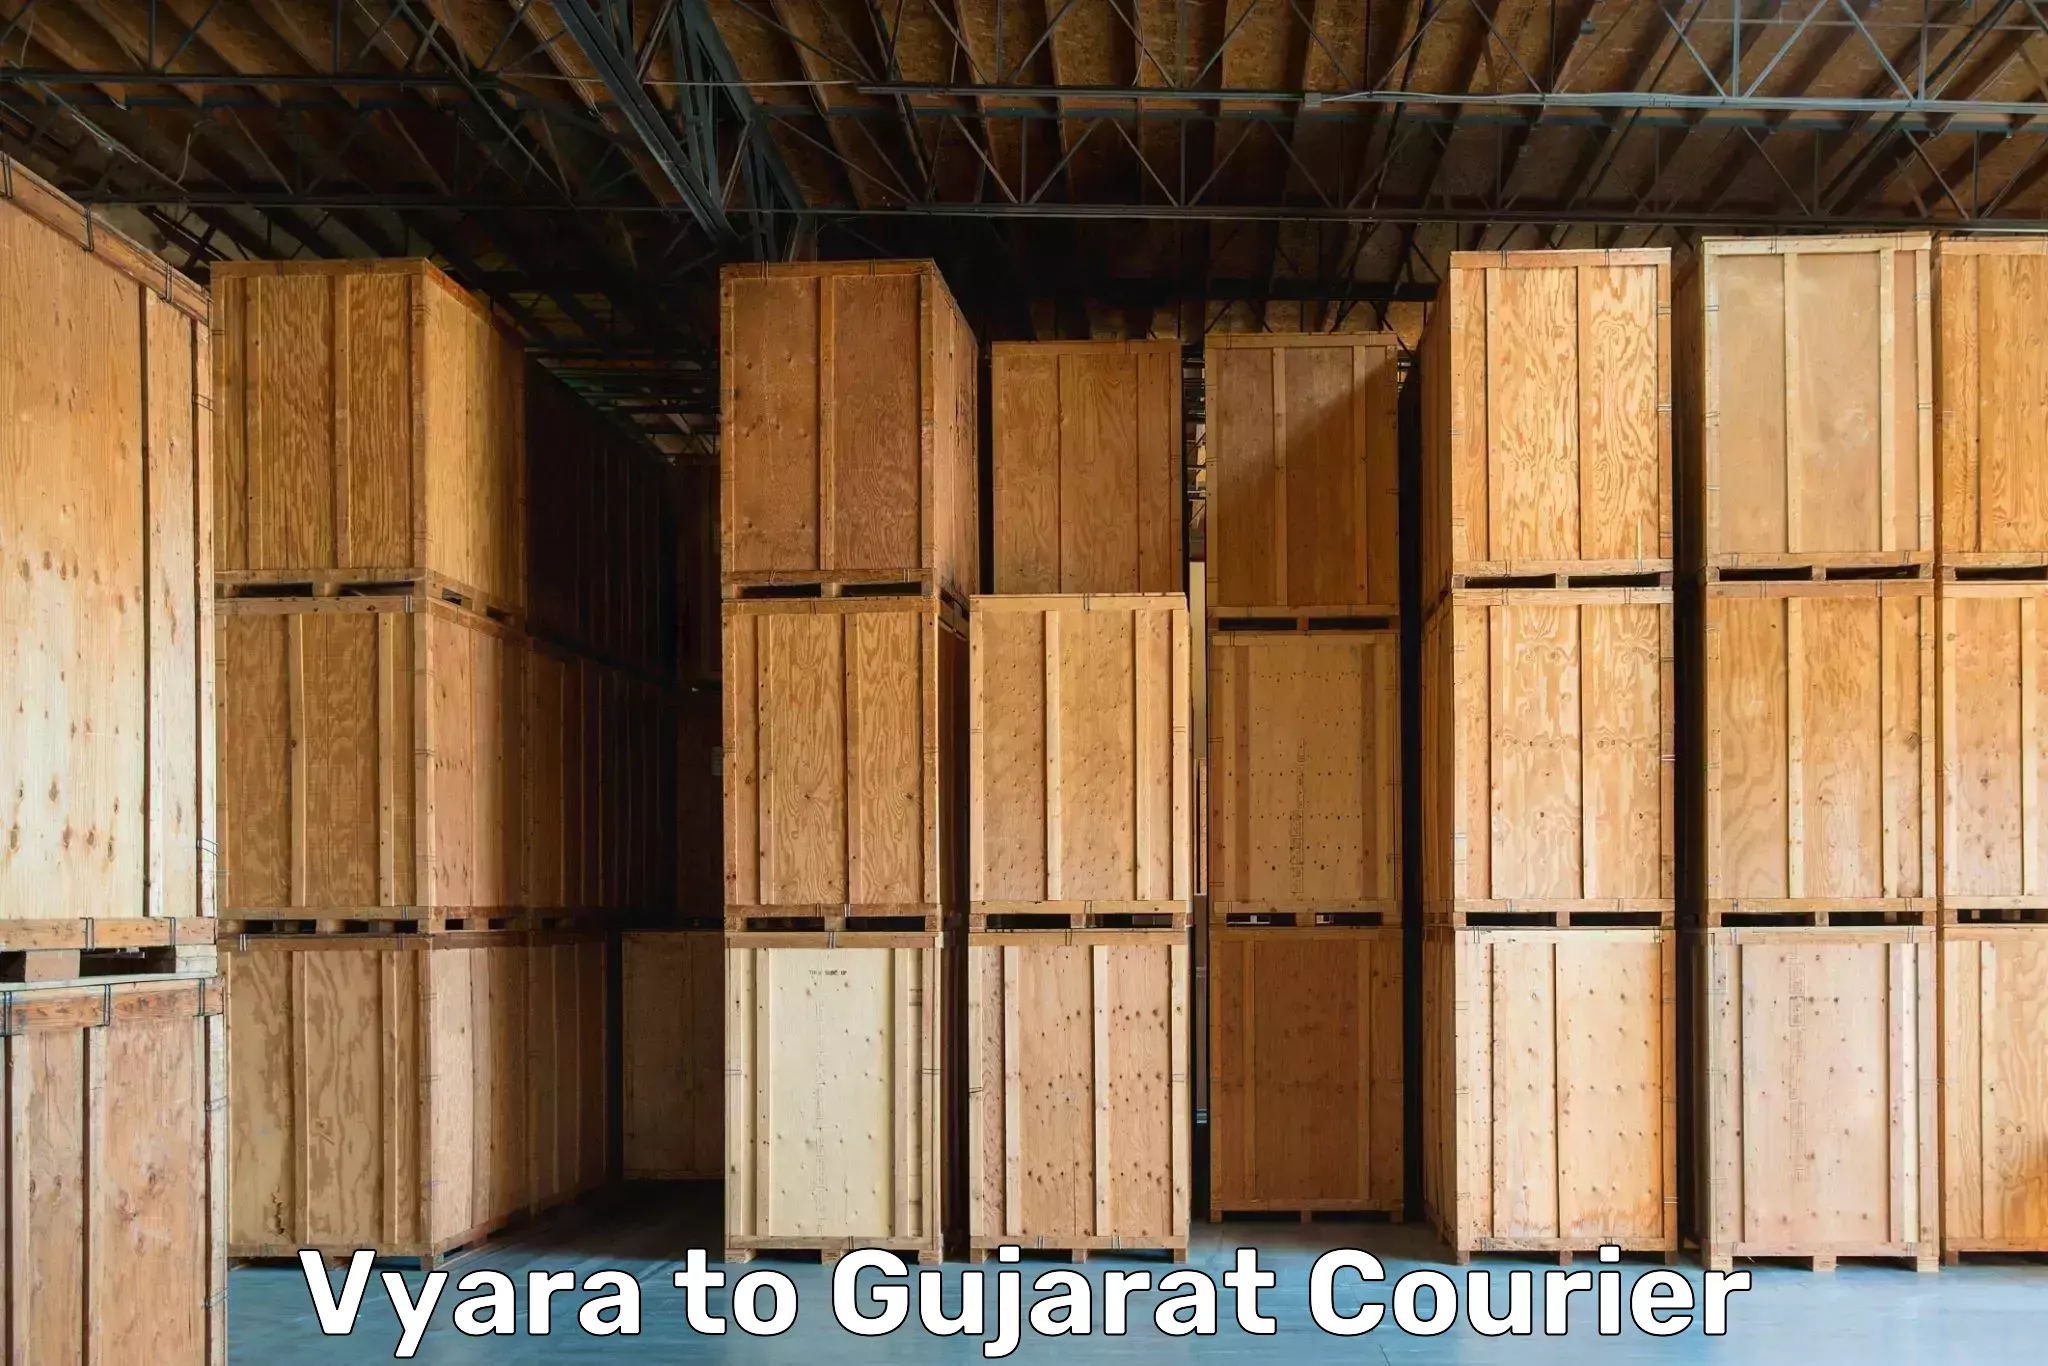 Moving and storage services Vyara to Patan Gujarat